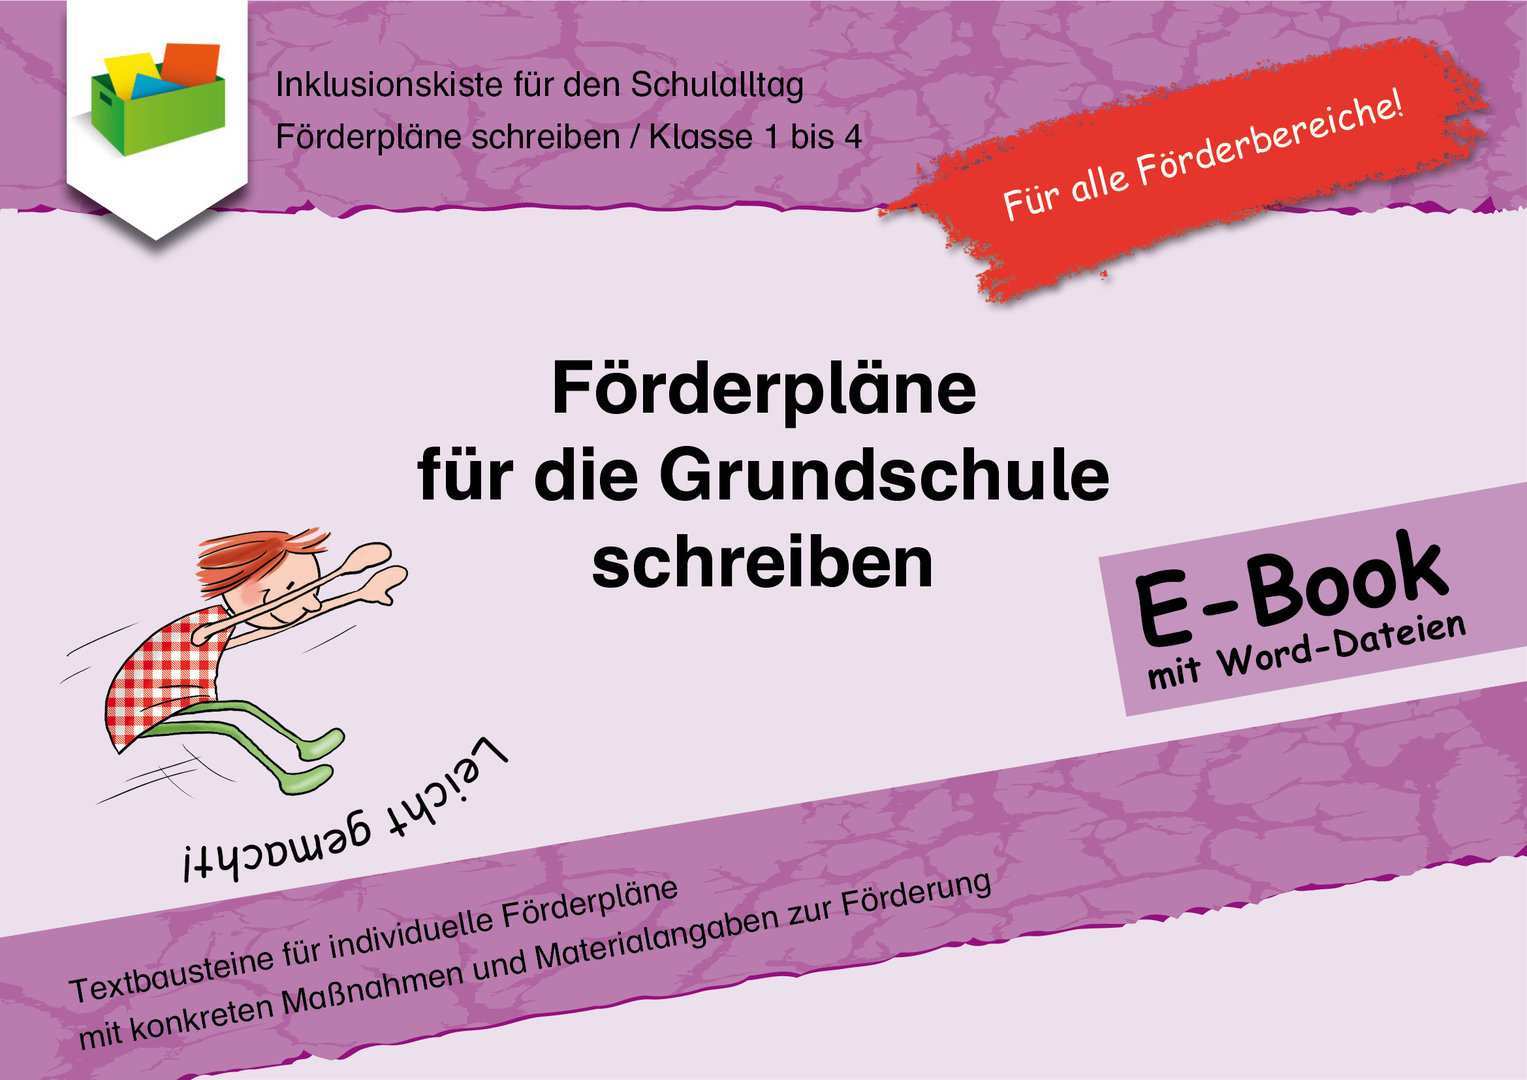 Forderplane Fur Die Grundschule Schreiben Mit Word Dateien Inklusionskiste